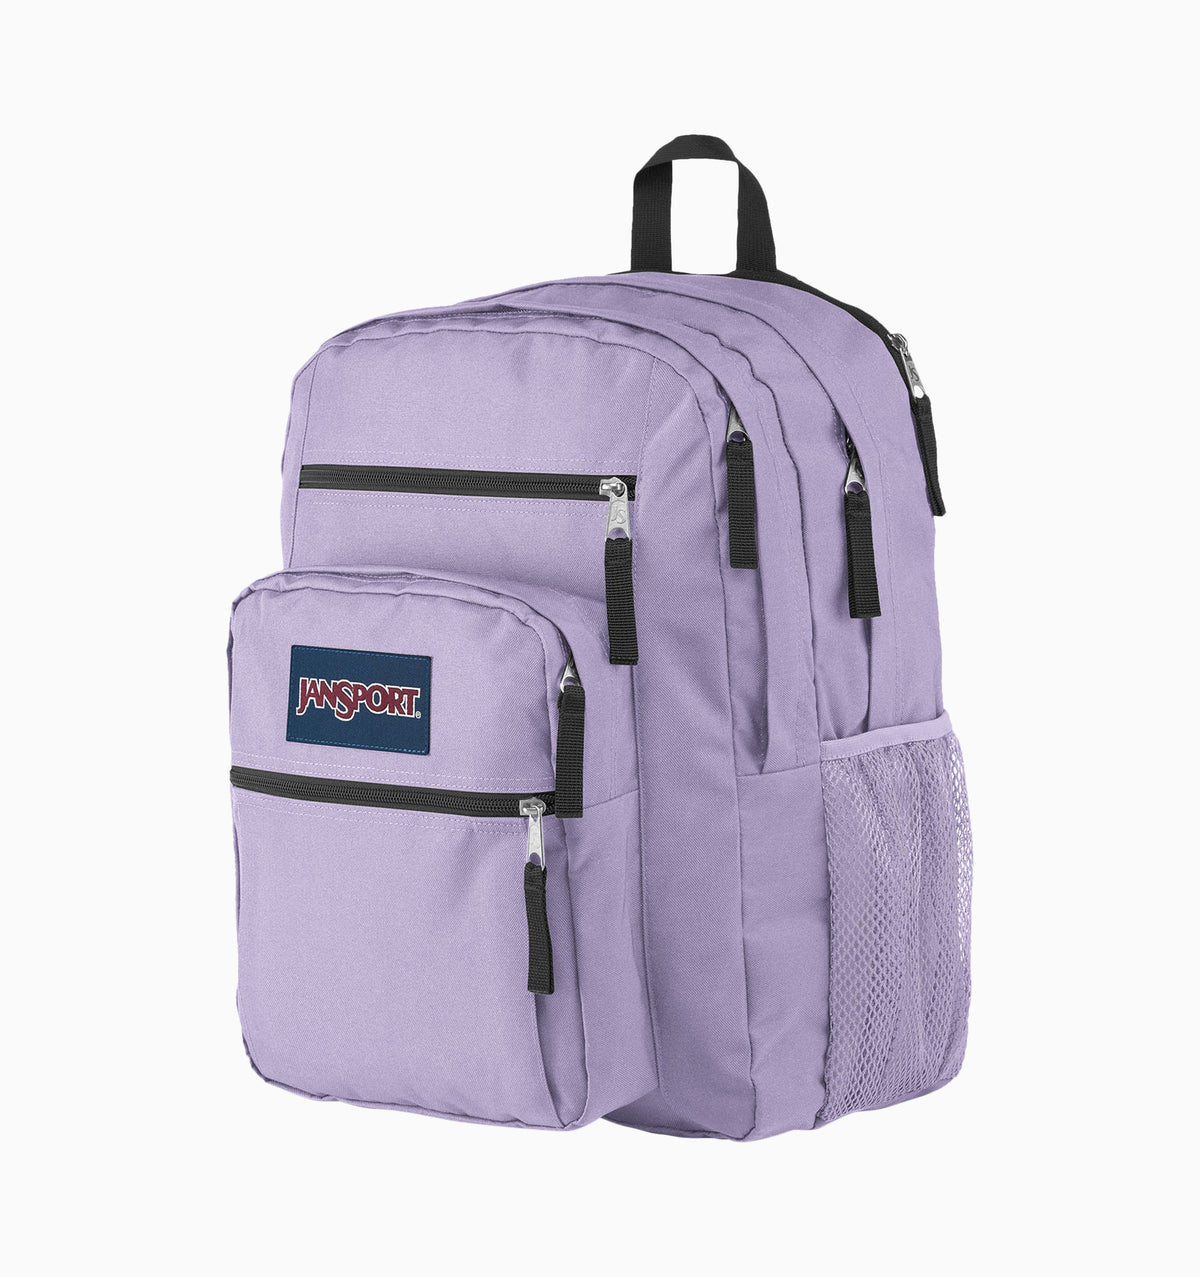 JanSport 16" Big Student Laptop Backpack 34L - Pastel Lilac